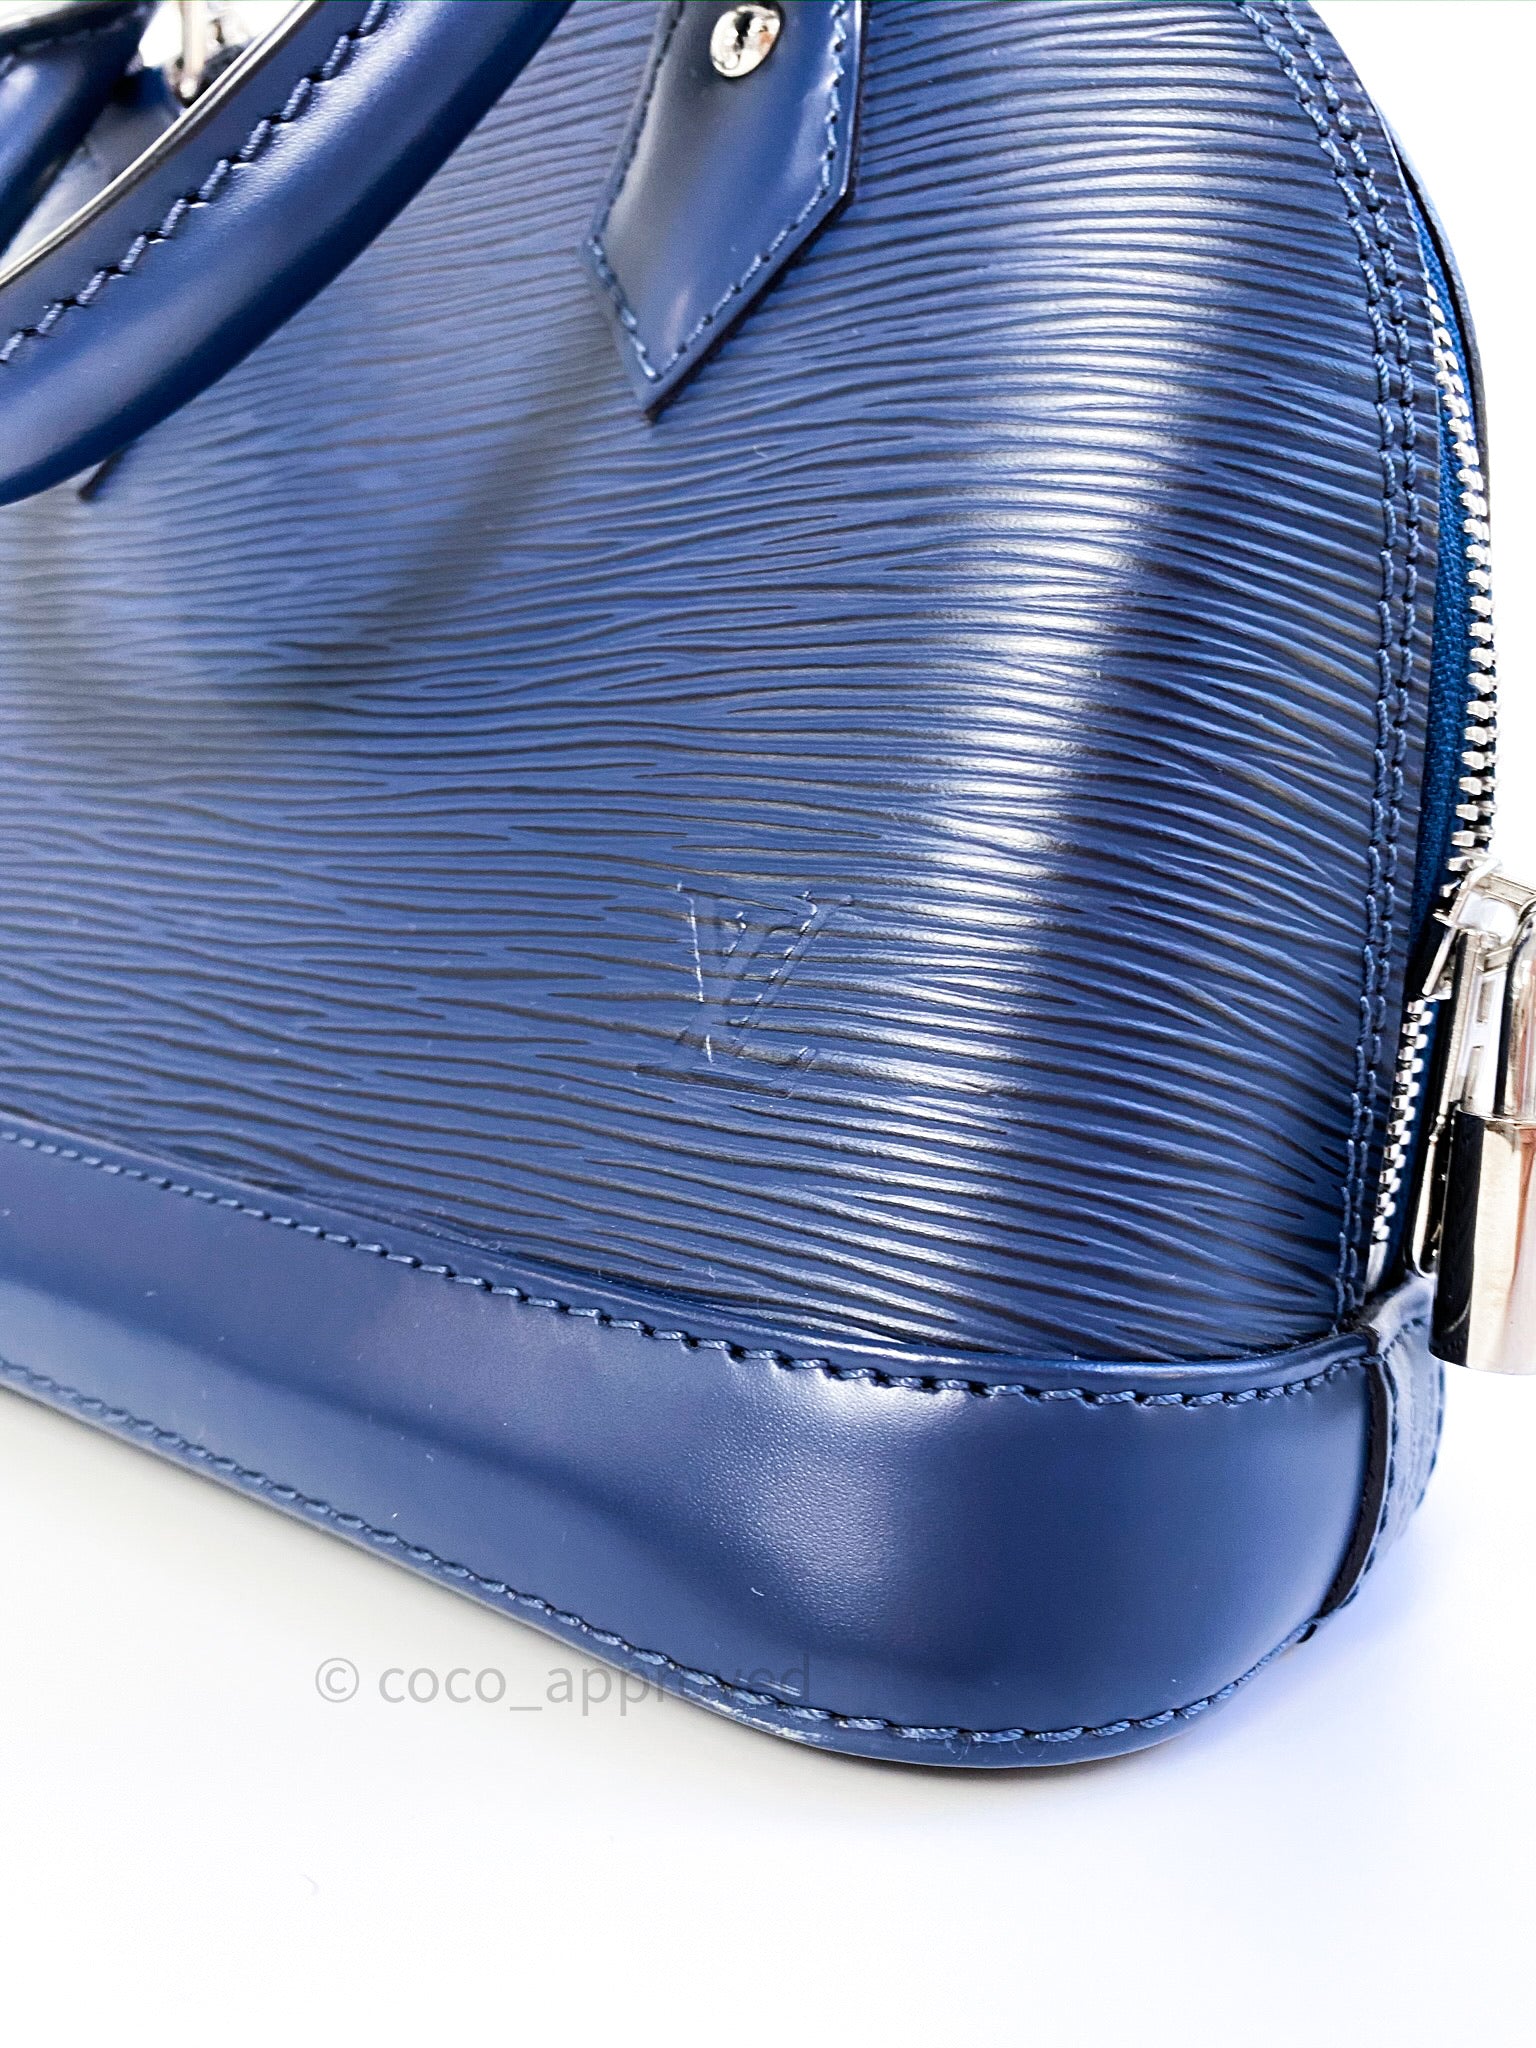 Louis Vuitton M40855 Alma Bb Epi Leather Indigo